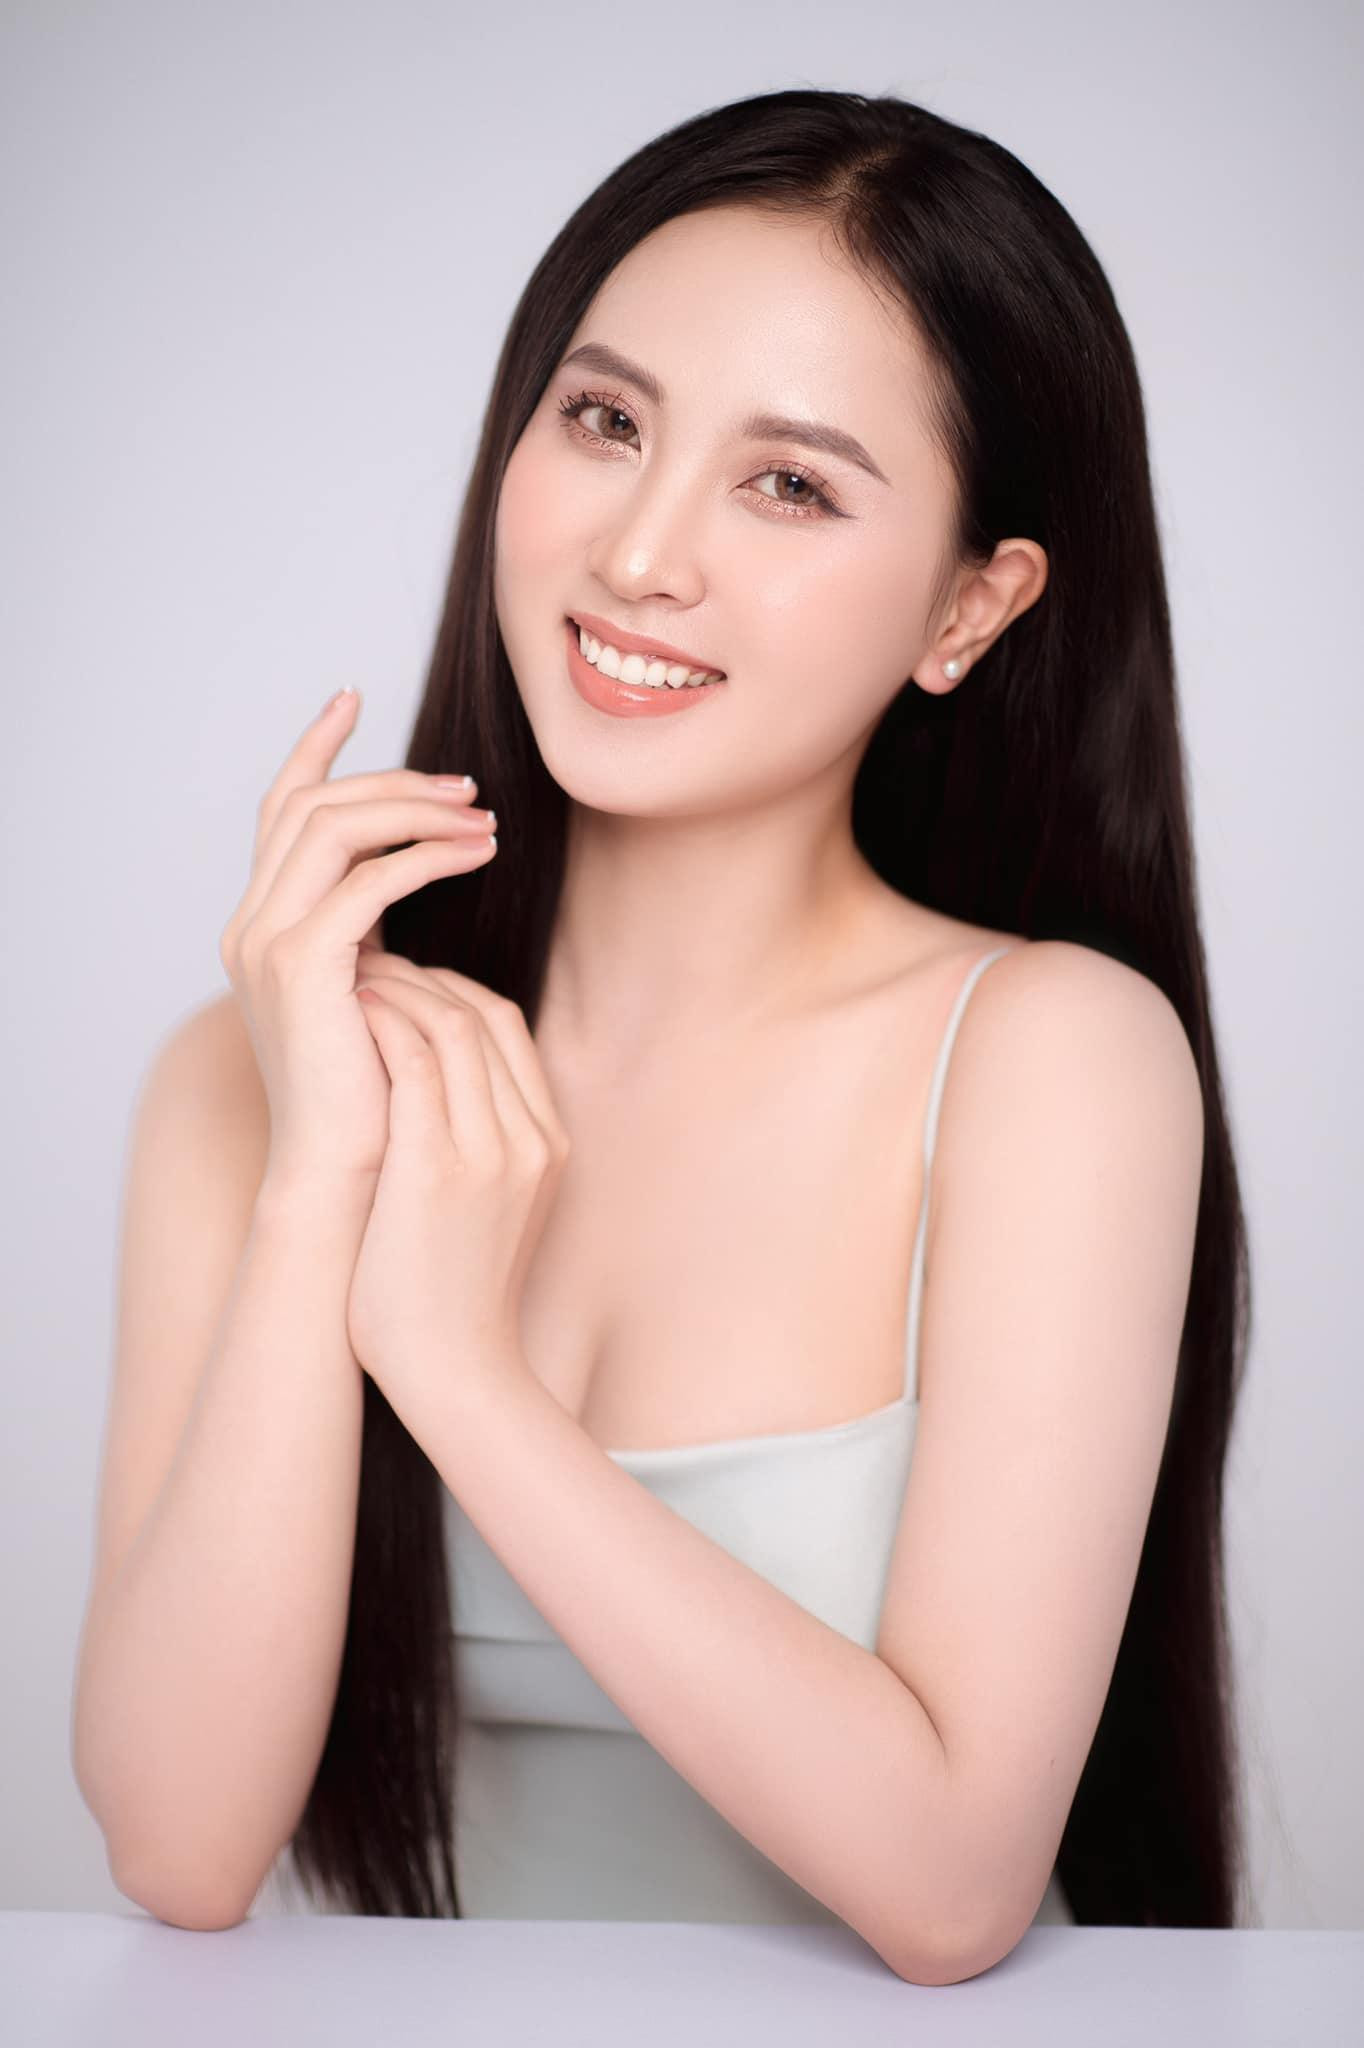 Nhan sắc ngọt ngào của người đẹp Nghệ An hai lần dự thi Hoa hậu Việt Nam ảnh 1